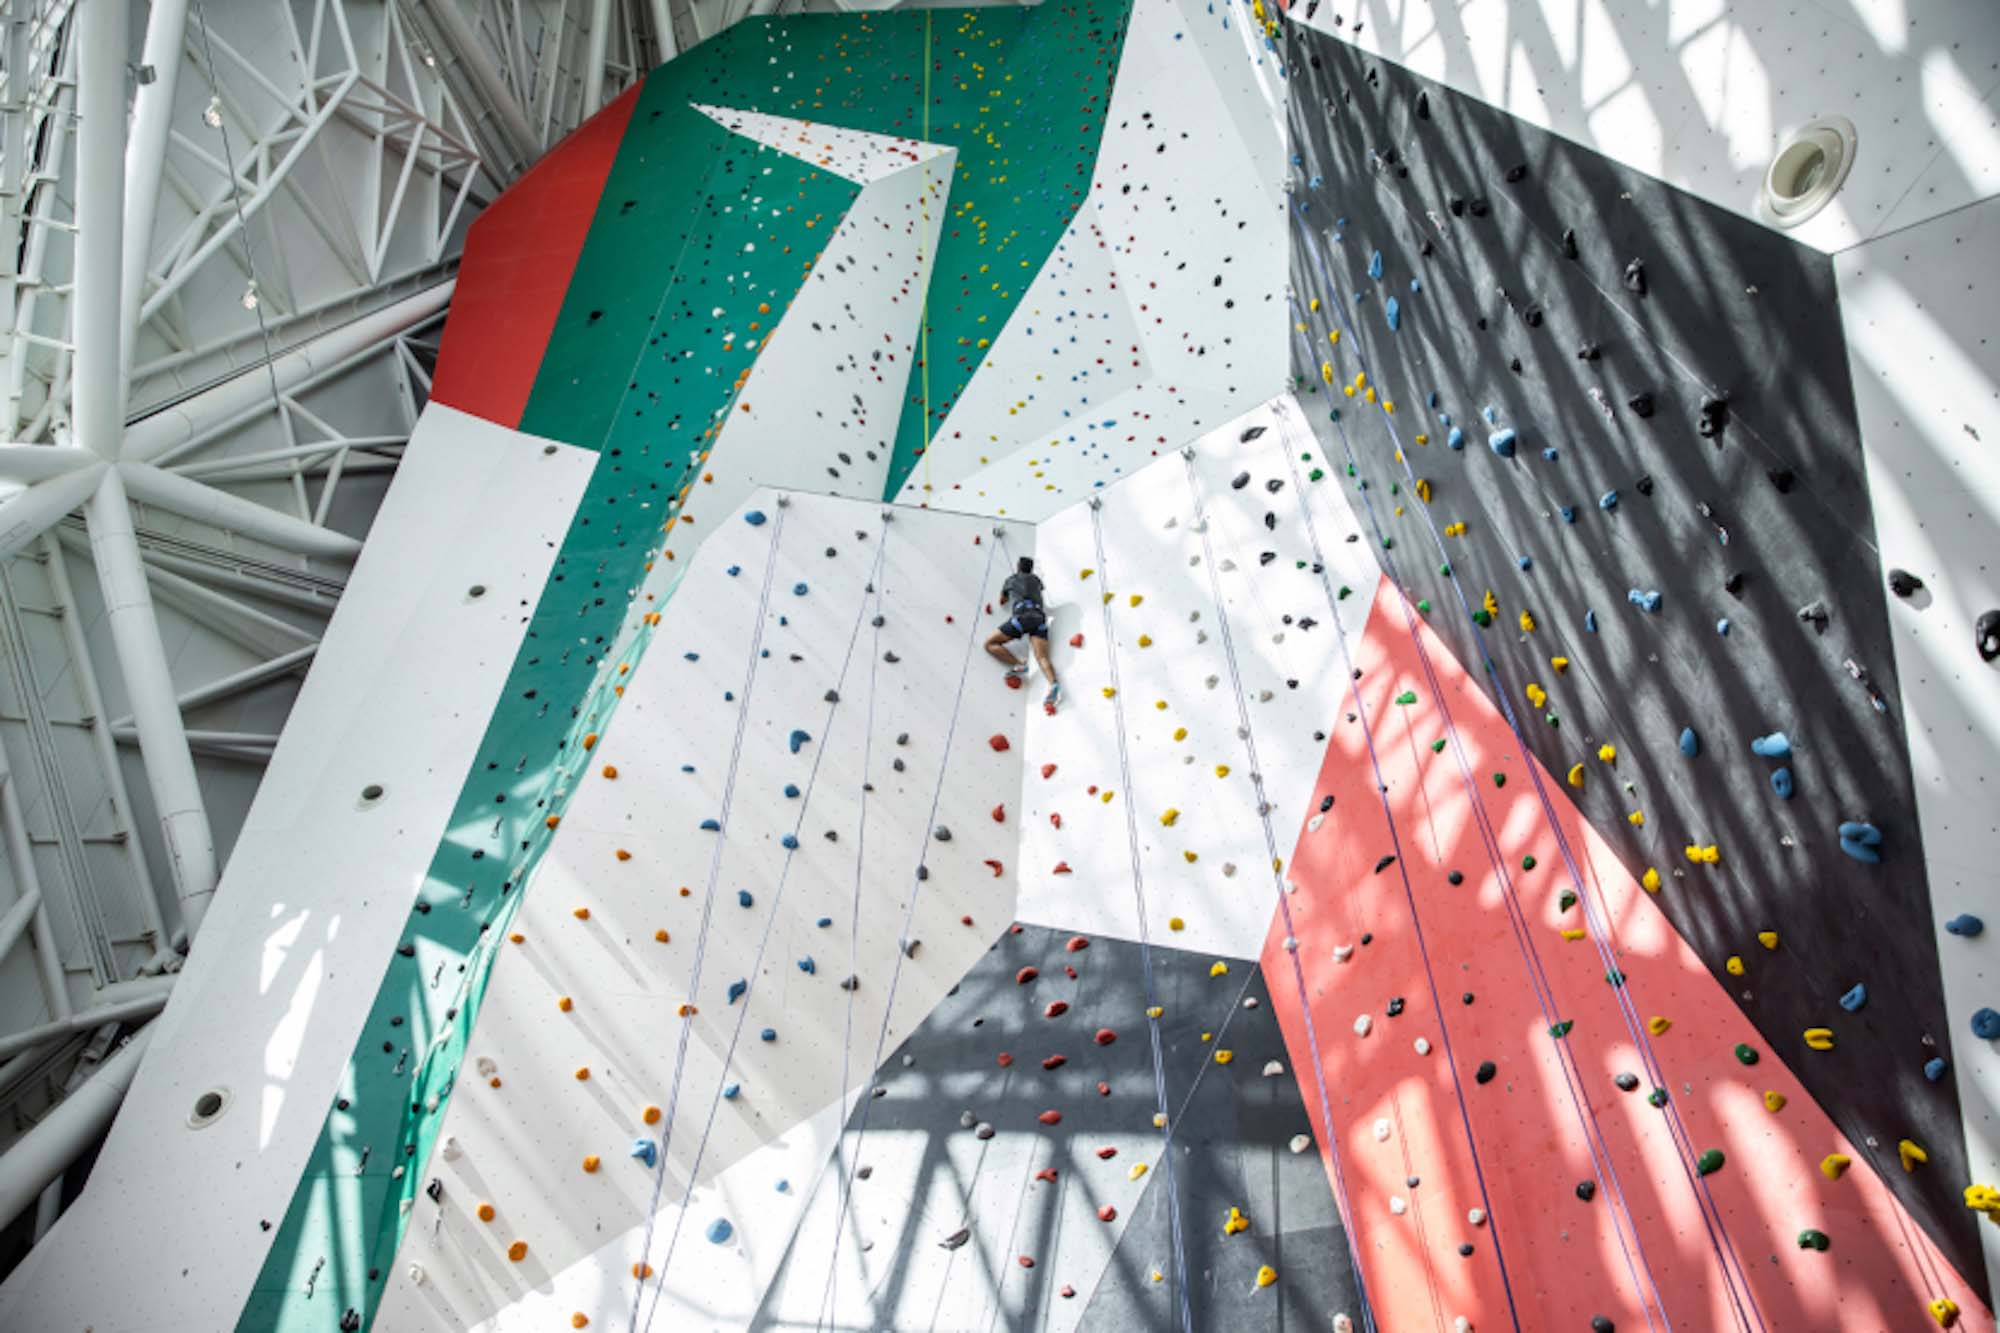  V novootvorenom
CLYMB v Abu Dhabi sa nachádza najvyššia indoorová lezecká stena na svete.